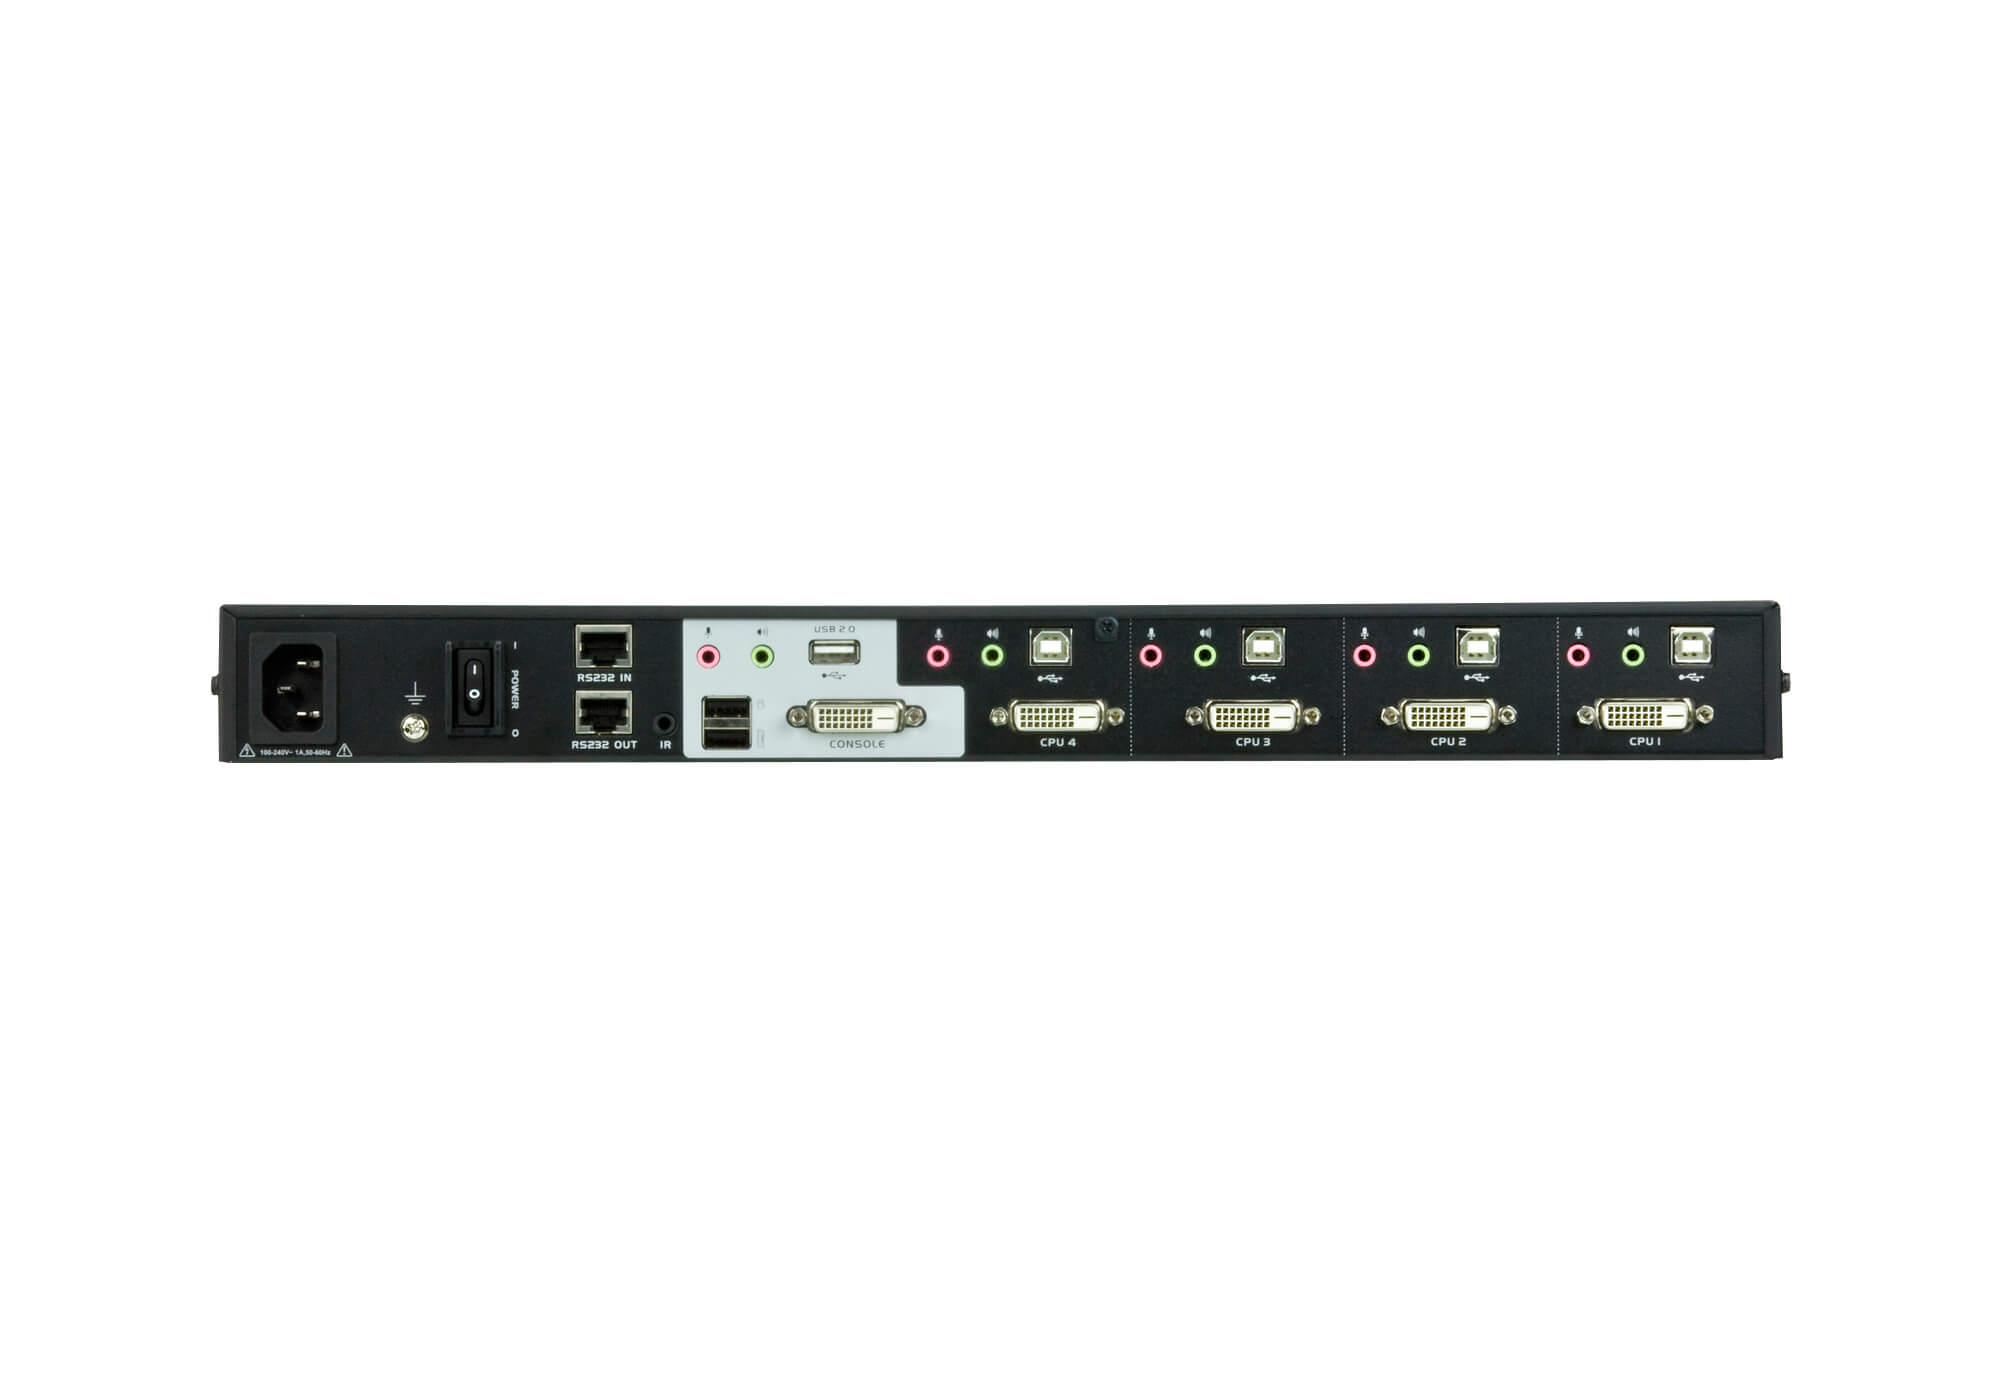 کی وی ام سوئیچ 4 پورت USB DVI Multi-View/Audio آتن مدل ATEN CM1164 با طراحی منحصر به فرد و ویژگی های نوآورانه خود، راه حل مناسبی برای طیف گسترده ای از کاربردهای عملی ( از جمله اتاق های کنترل، سیستم های نظارت، و مراکز کنترل ترافیک) است و که به شما امکان می دهد به طور یکپارچه سوئیچ کنید